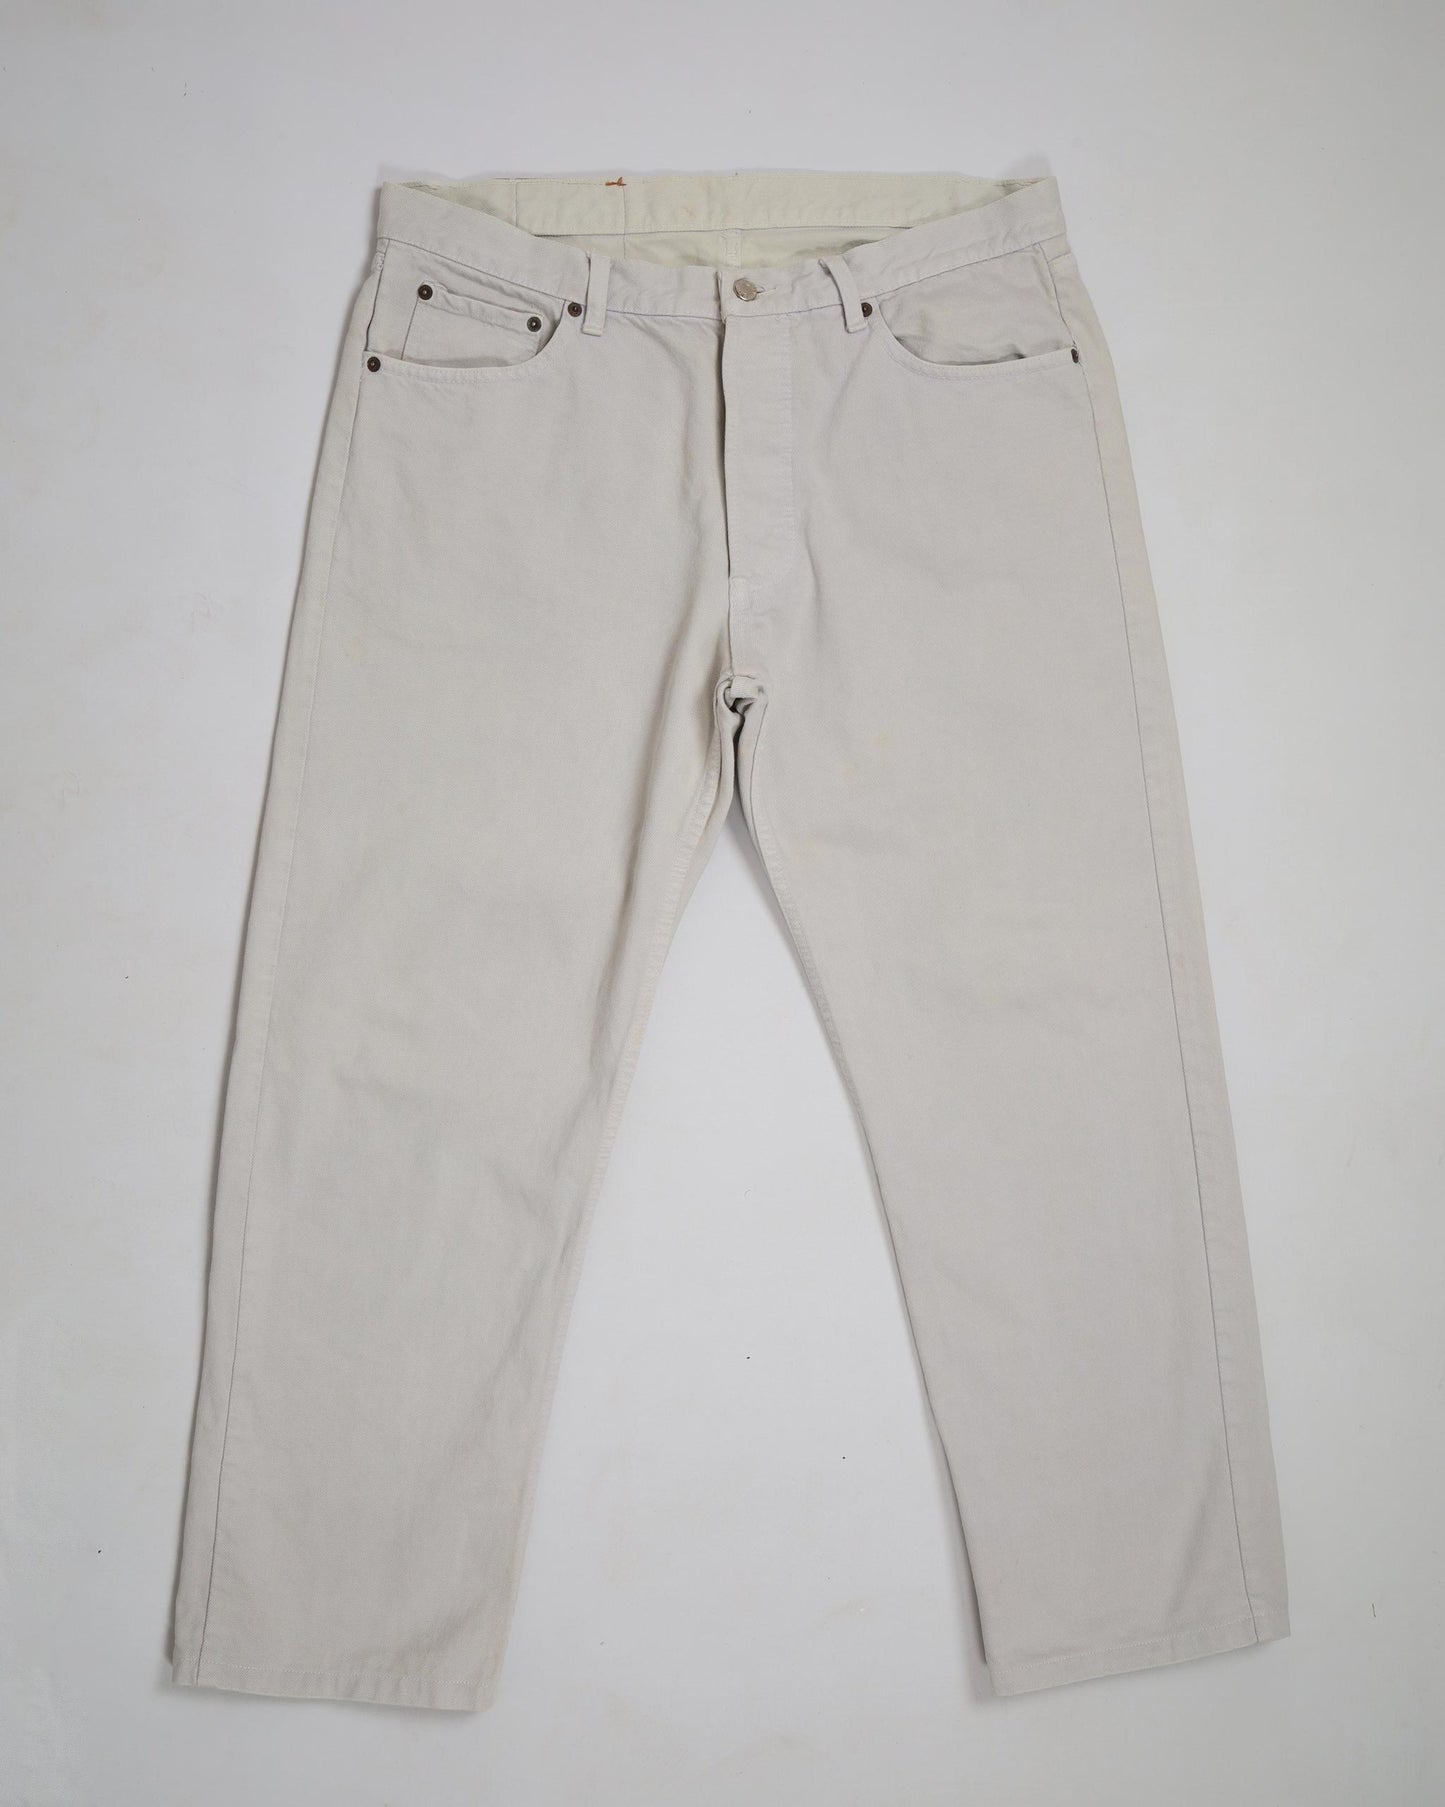 Vintage Levi’s 501 Straight Fit Denim Jeans